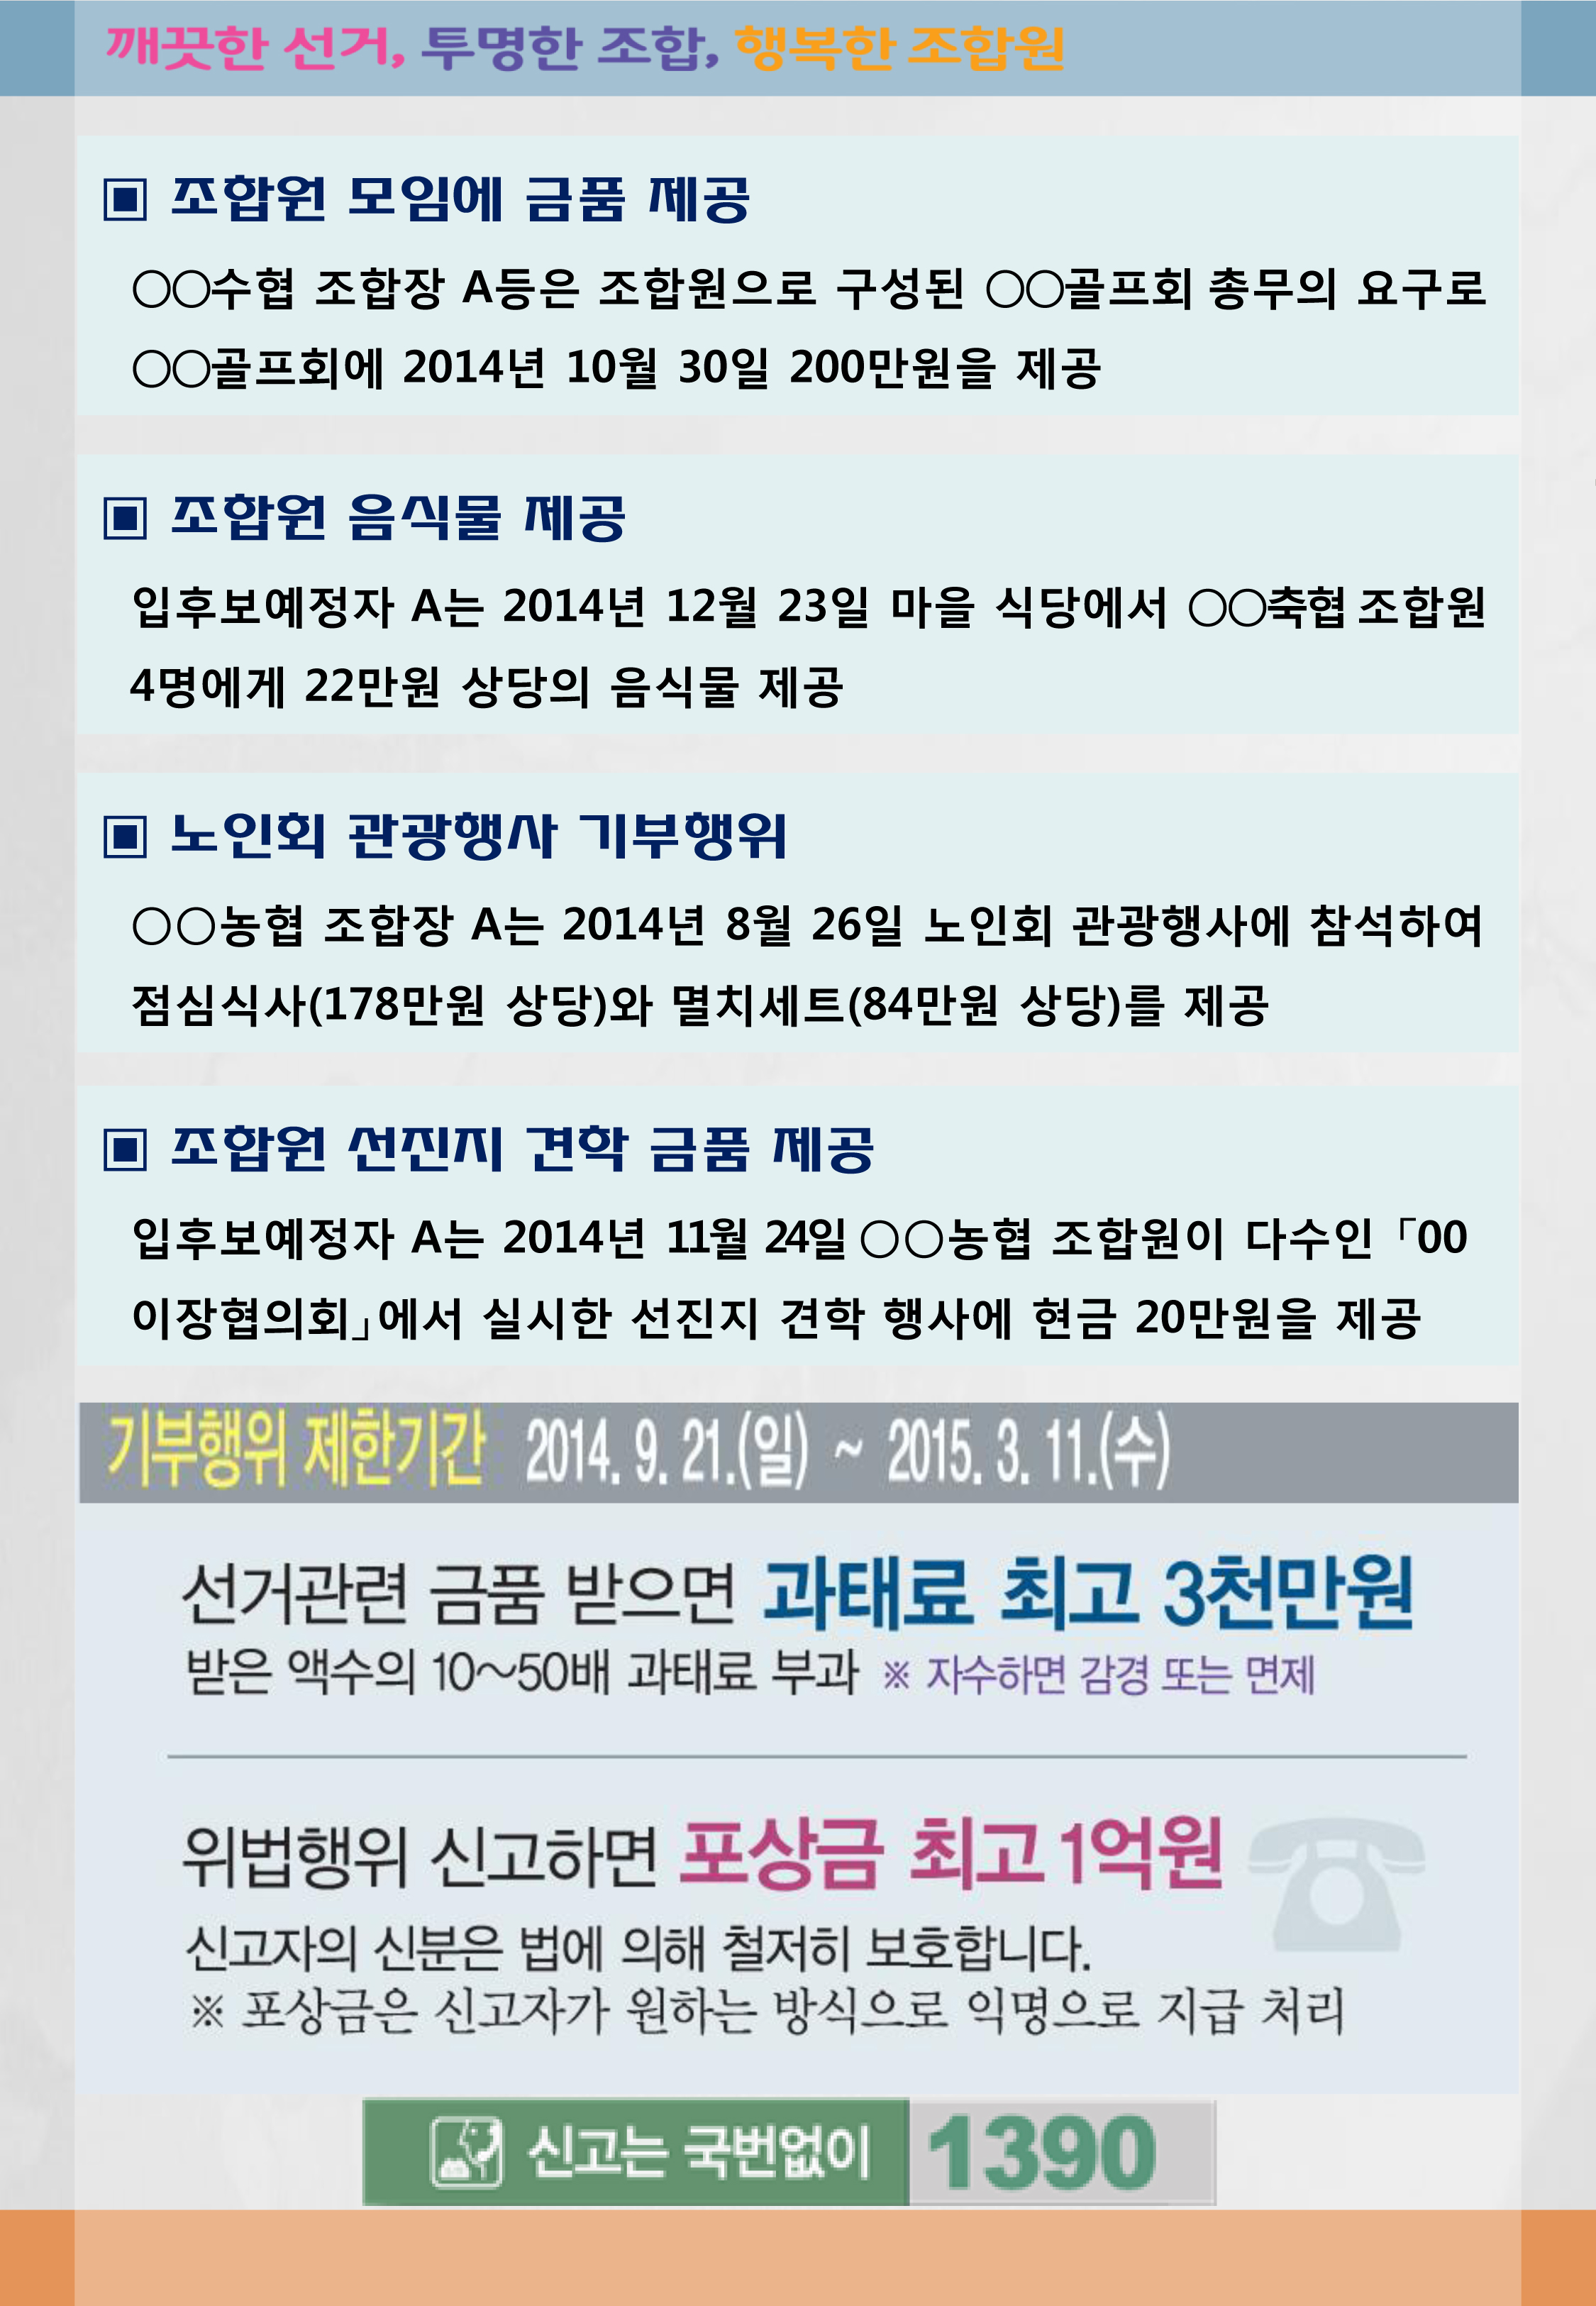 조합장선거 생생정보 제2호